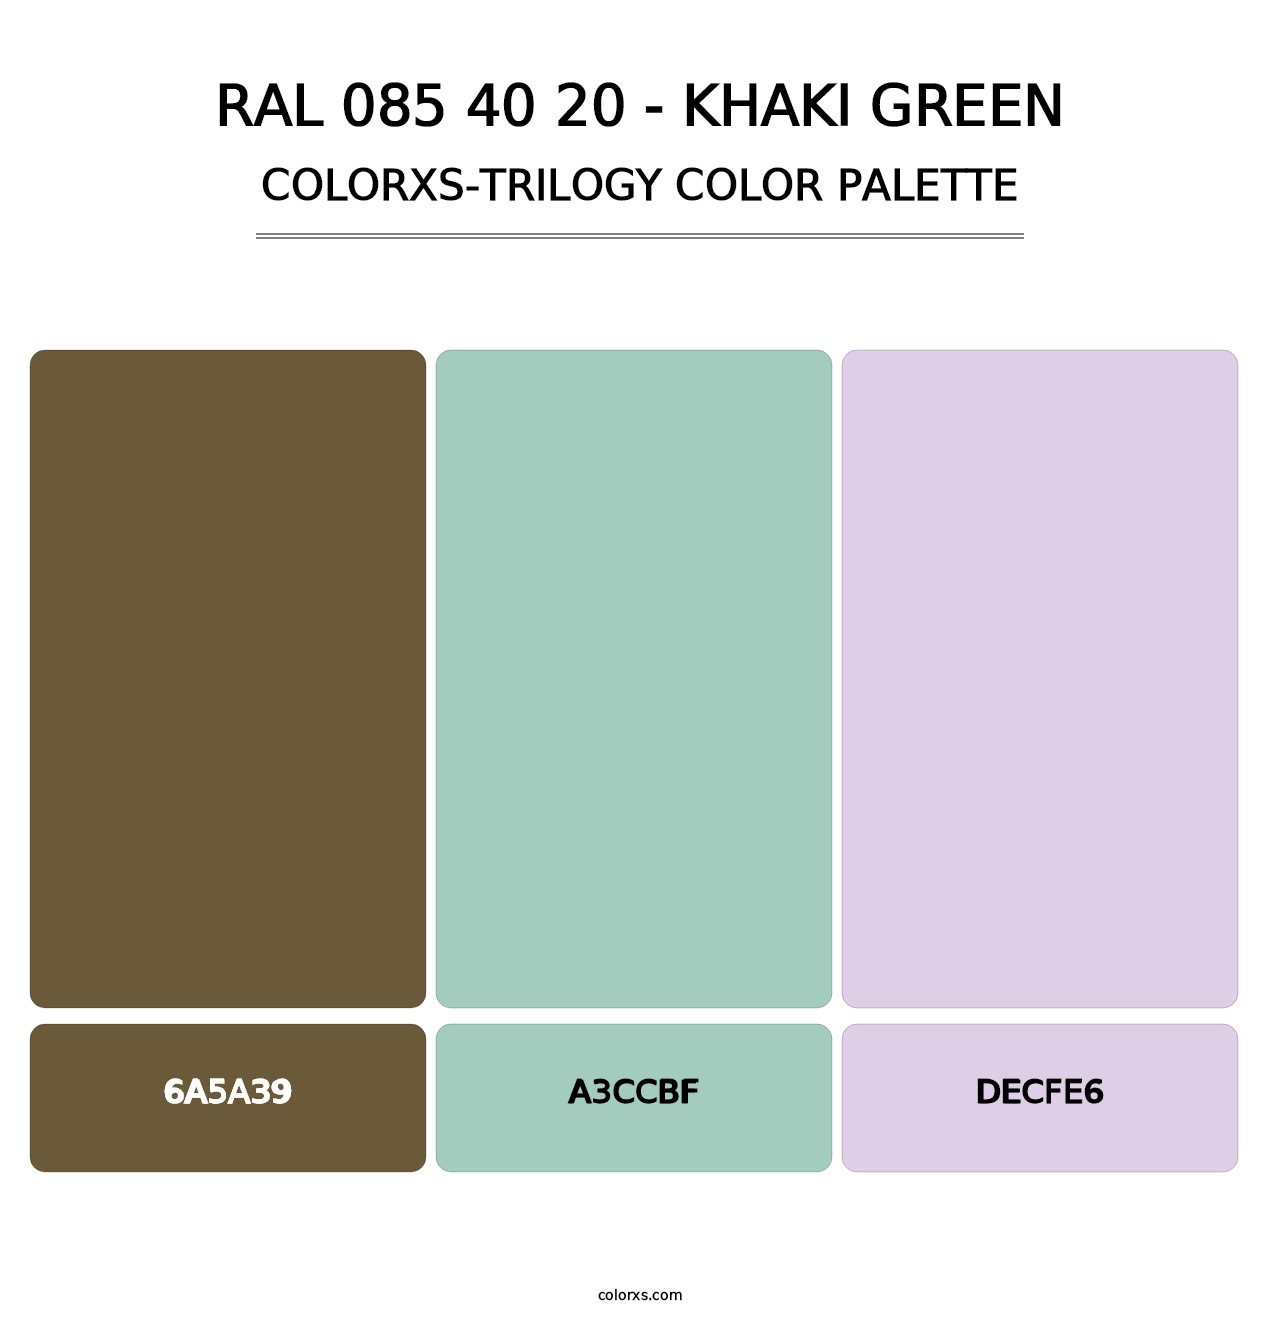 RAL 085 40 20 - Khaki Green - Colorxs Trilogy Palette